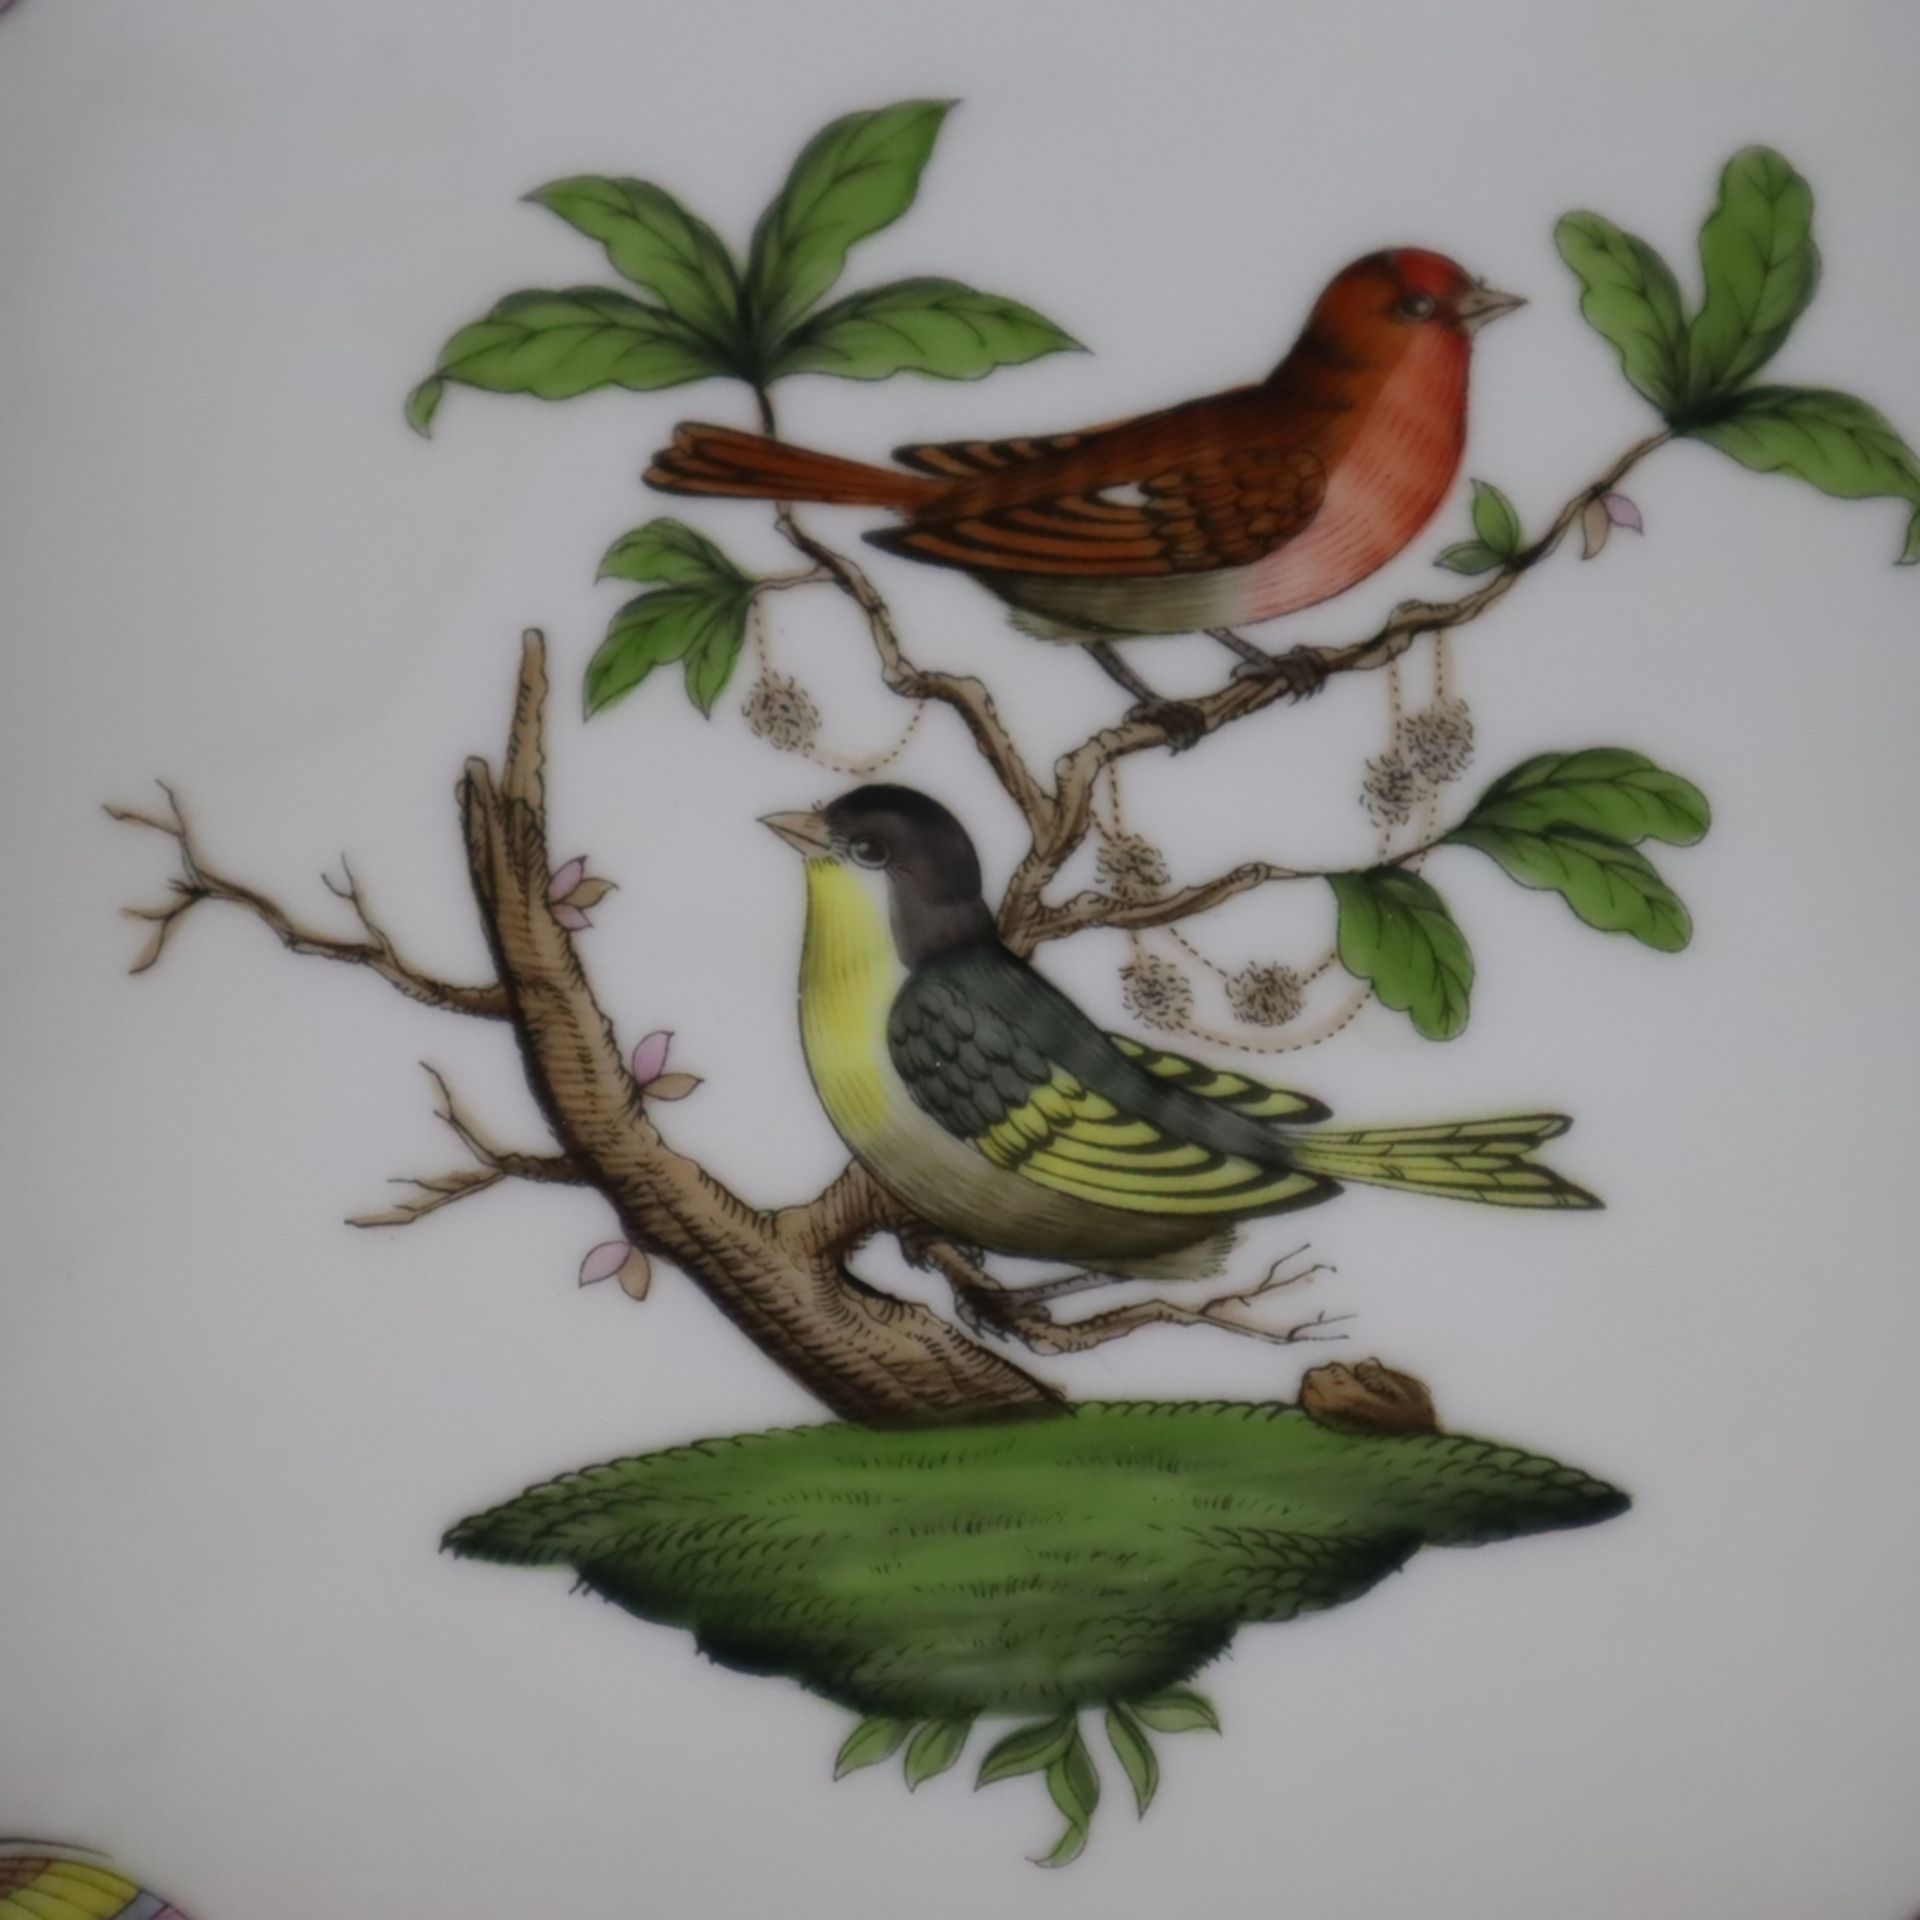 Gebäckschale- Herend, Ungarn, Porzellan, Dekor "Rothschild", polychrome Malerei mit Vogel-und Insek - Image 2 of 9